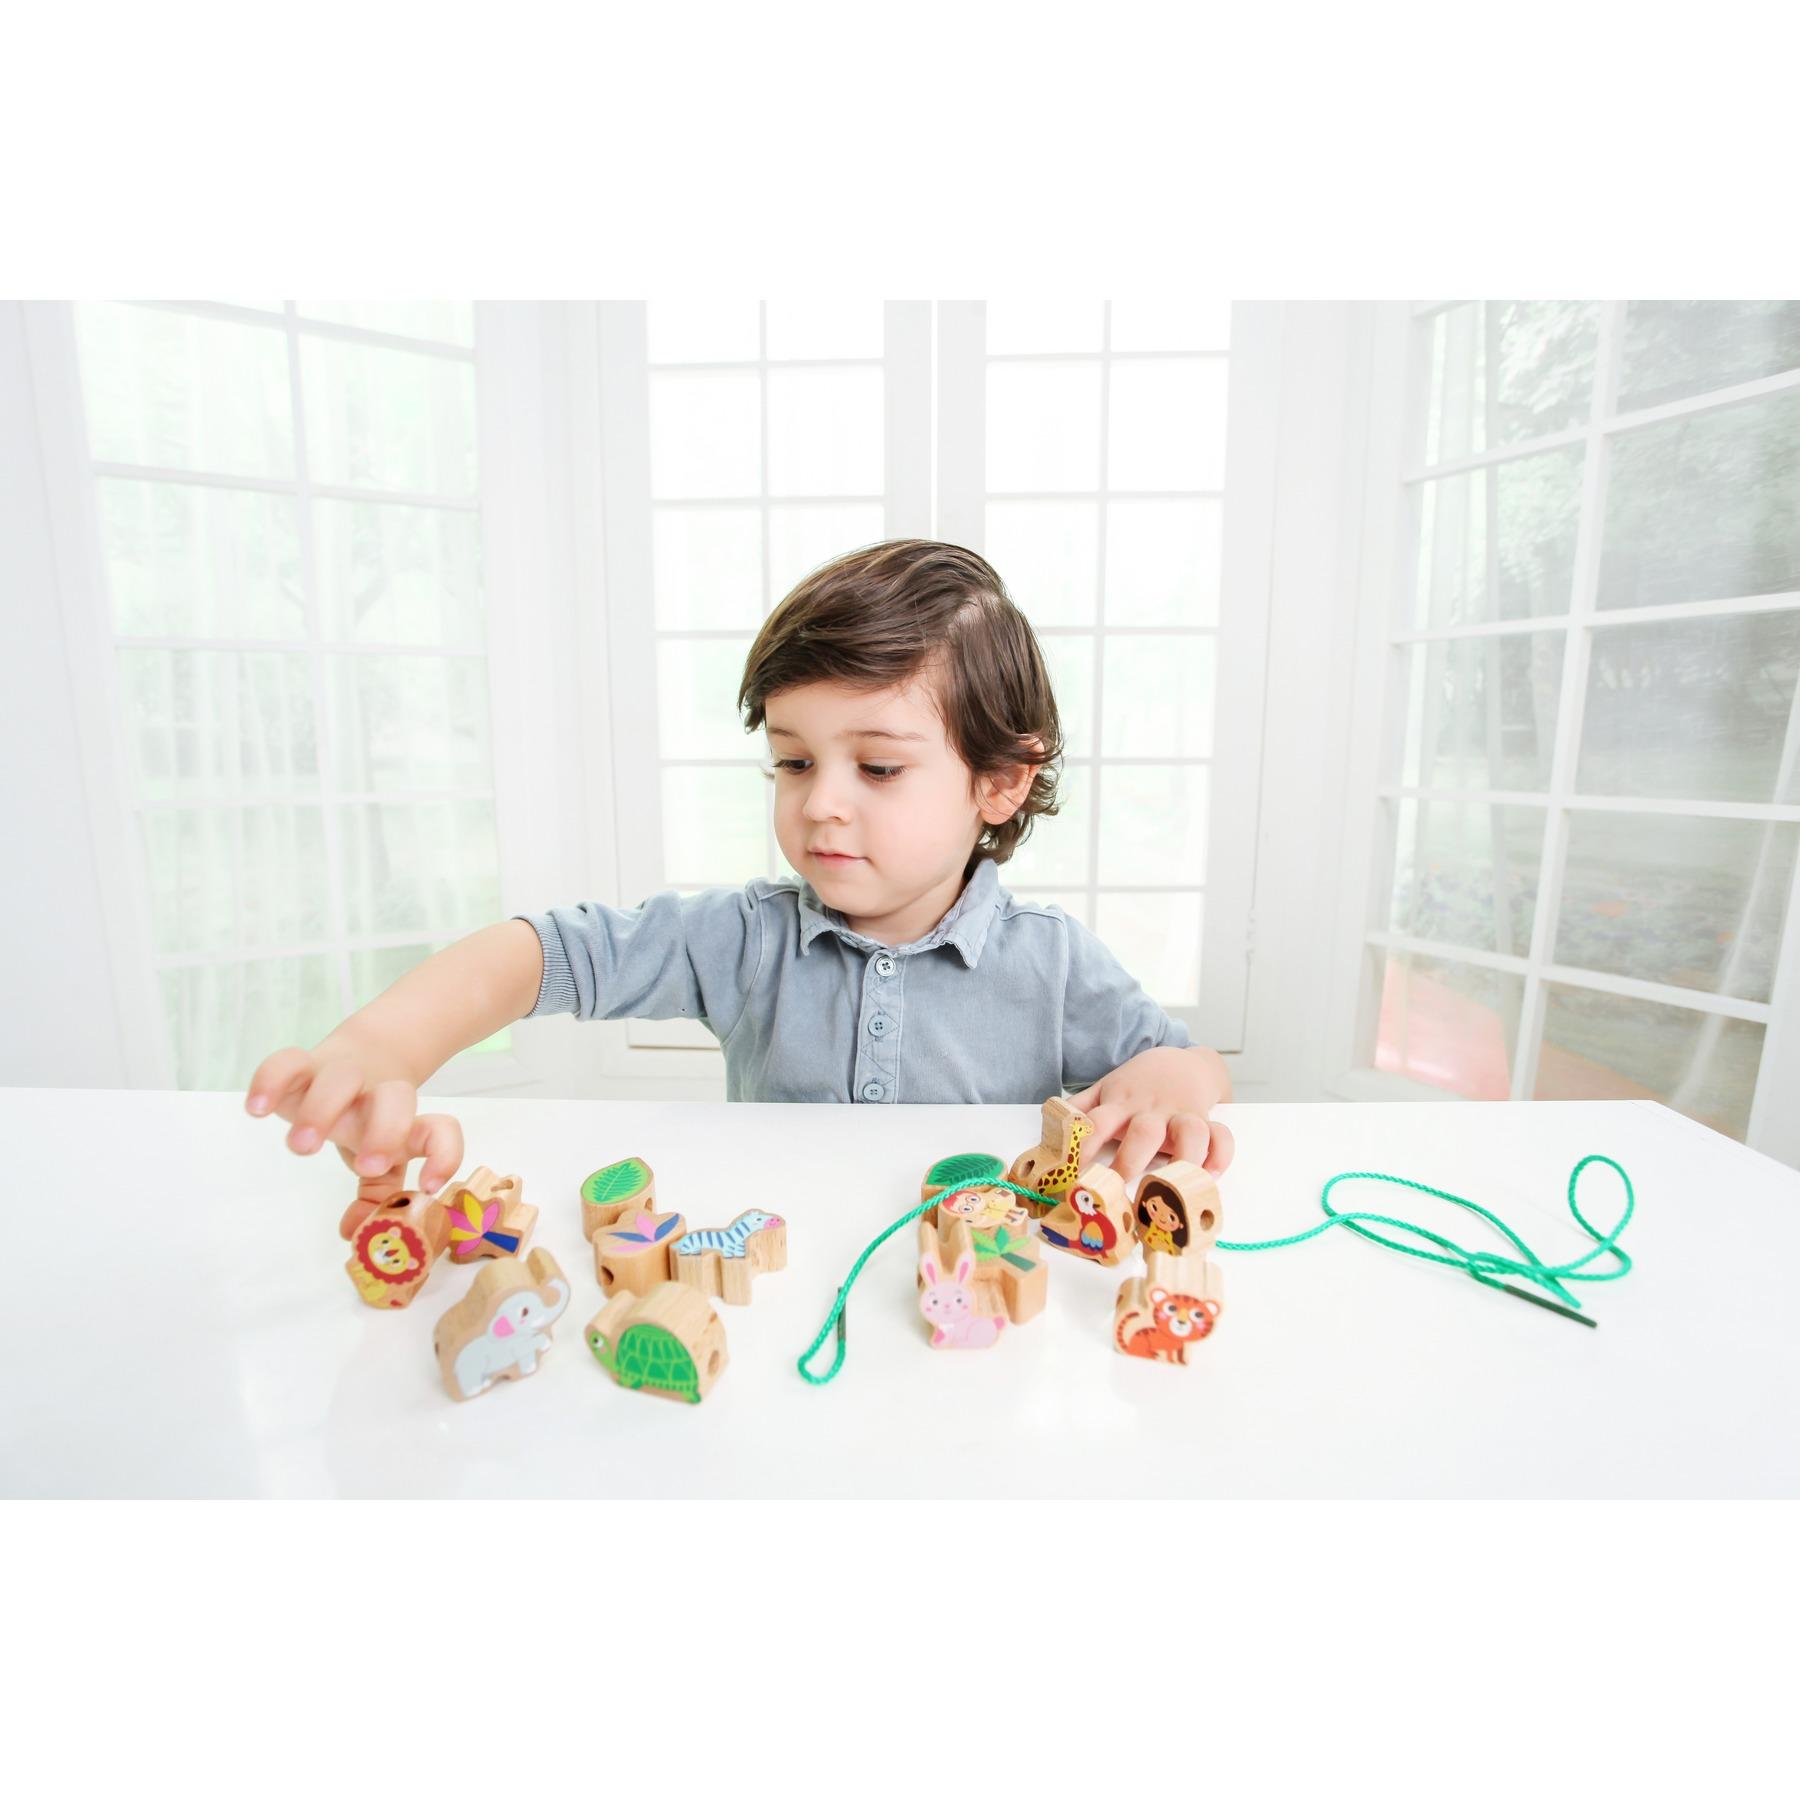 Изображение товара: Деревянные бусины для детей (части с веревкой, деревянные бусины для поделок, Монтессори ремесла детей)